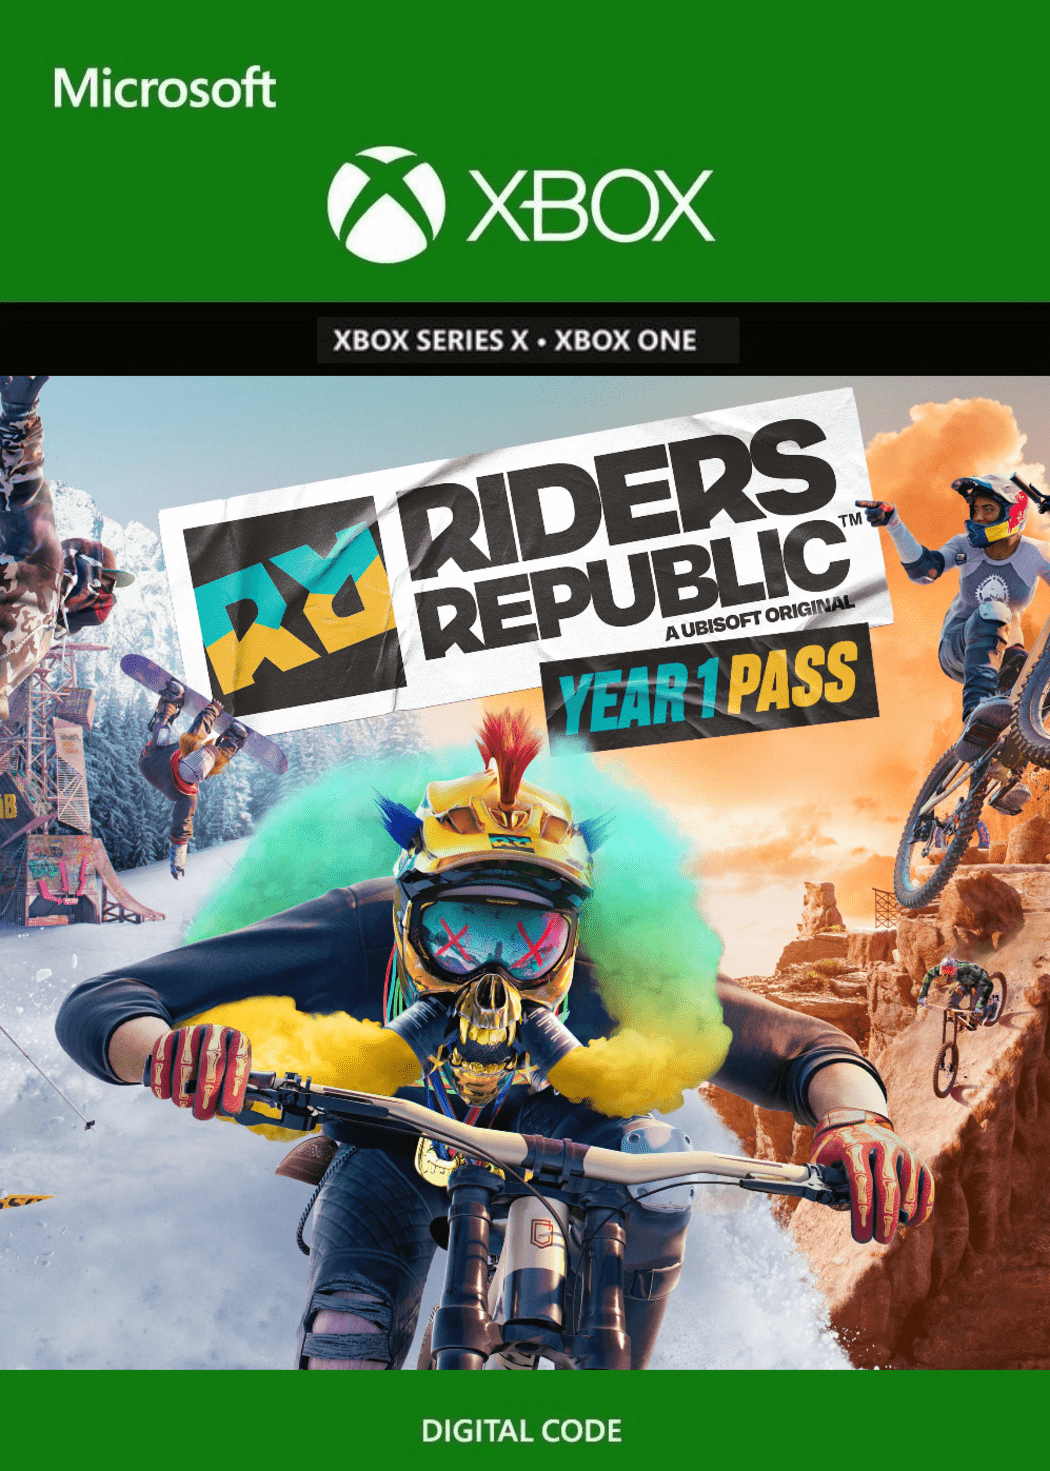 Riders Republic: Resgate aqui seu código para o Beta